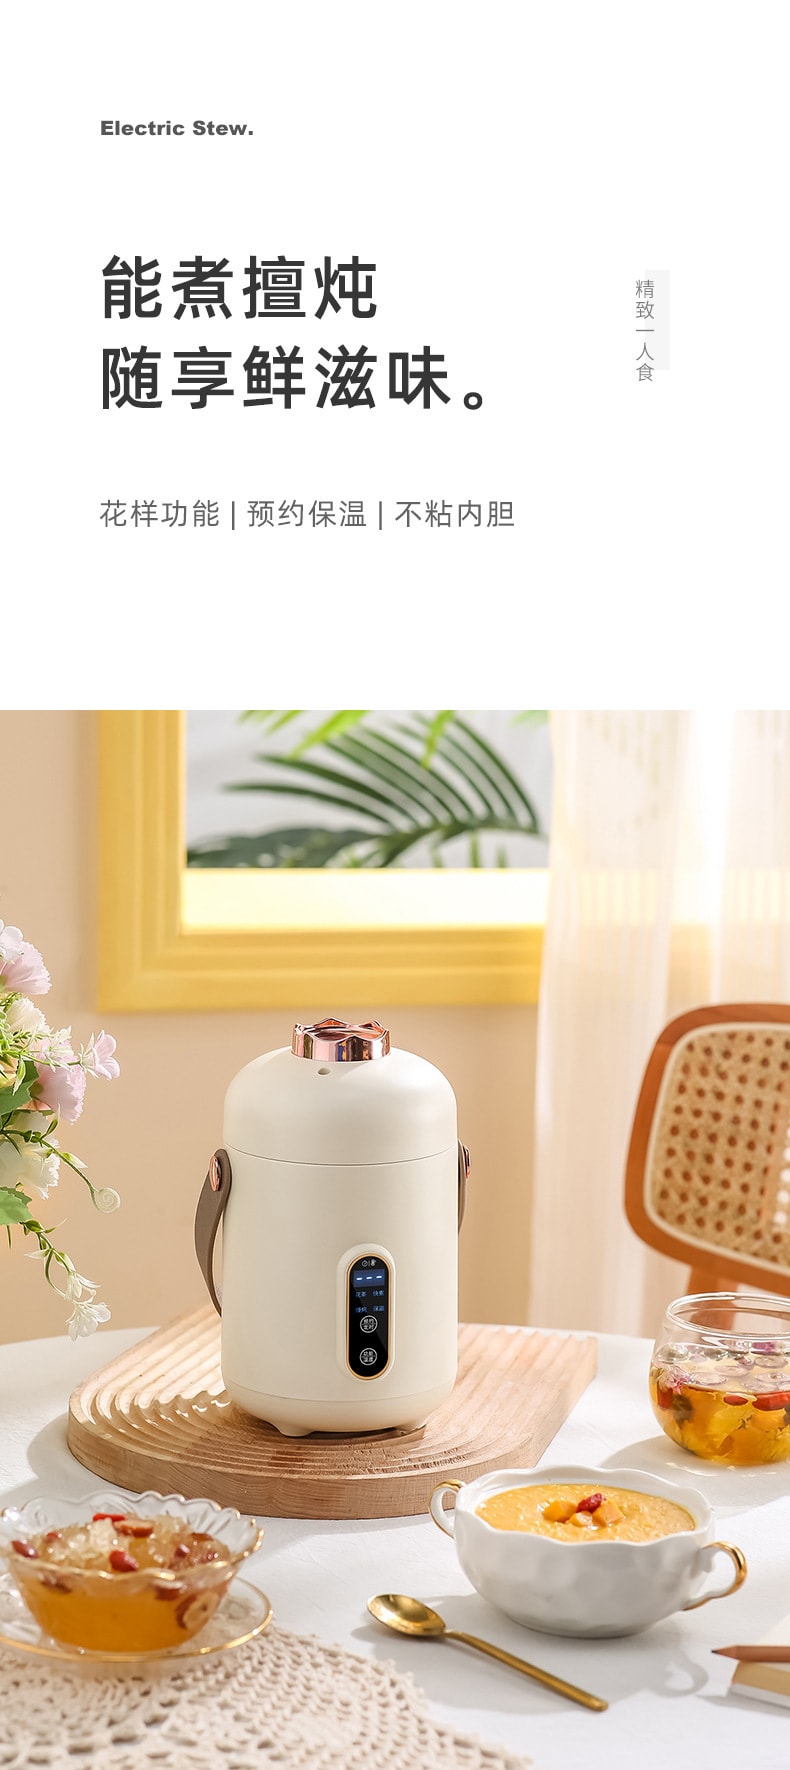 【中国直邮】梵洛  110V智能电炖锅煮粥神器家用多功能迷你便携式   米白色